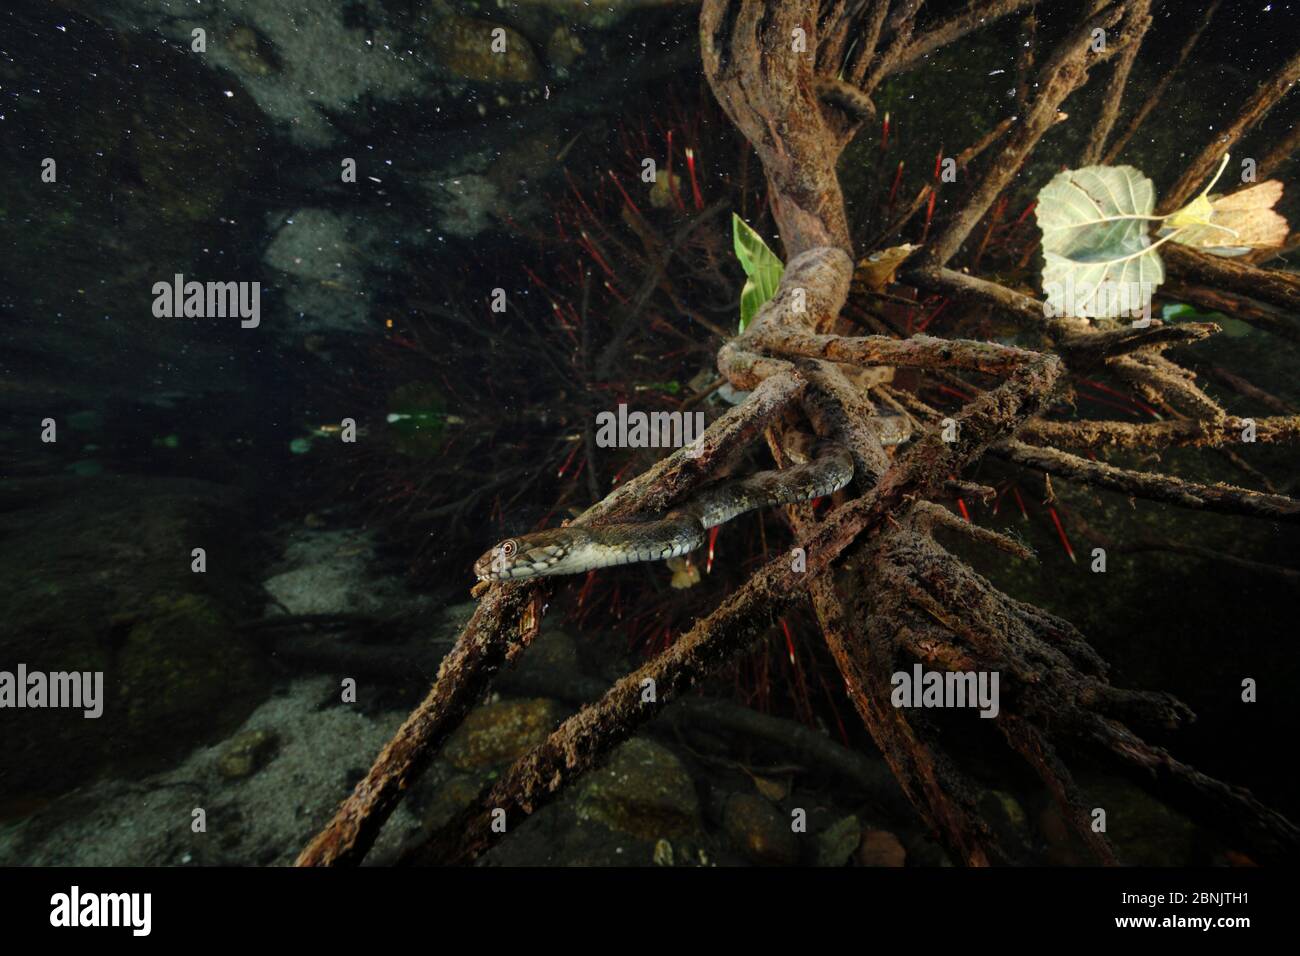 Viperine Snake (Natrix maura) sous l'eau, la chasse pour le poisson, Massane, rivière des Albères, Pyrénées, France, octobre. Banque D'Images